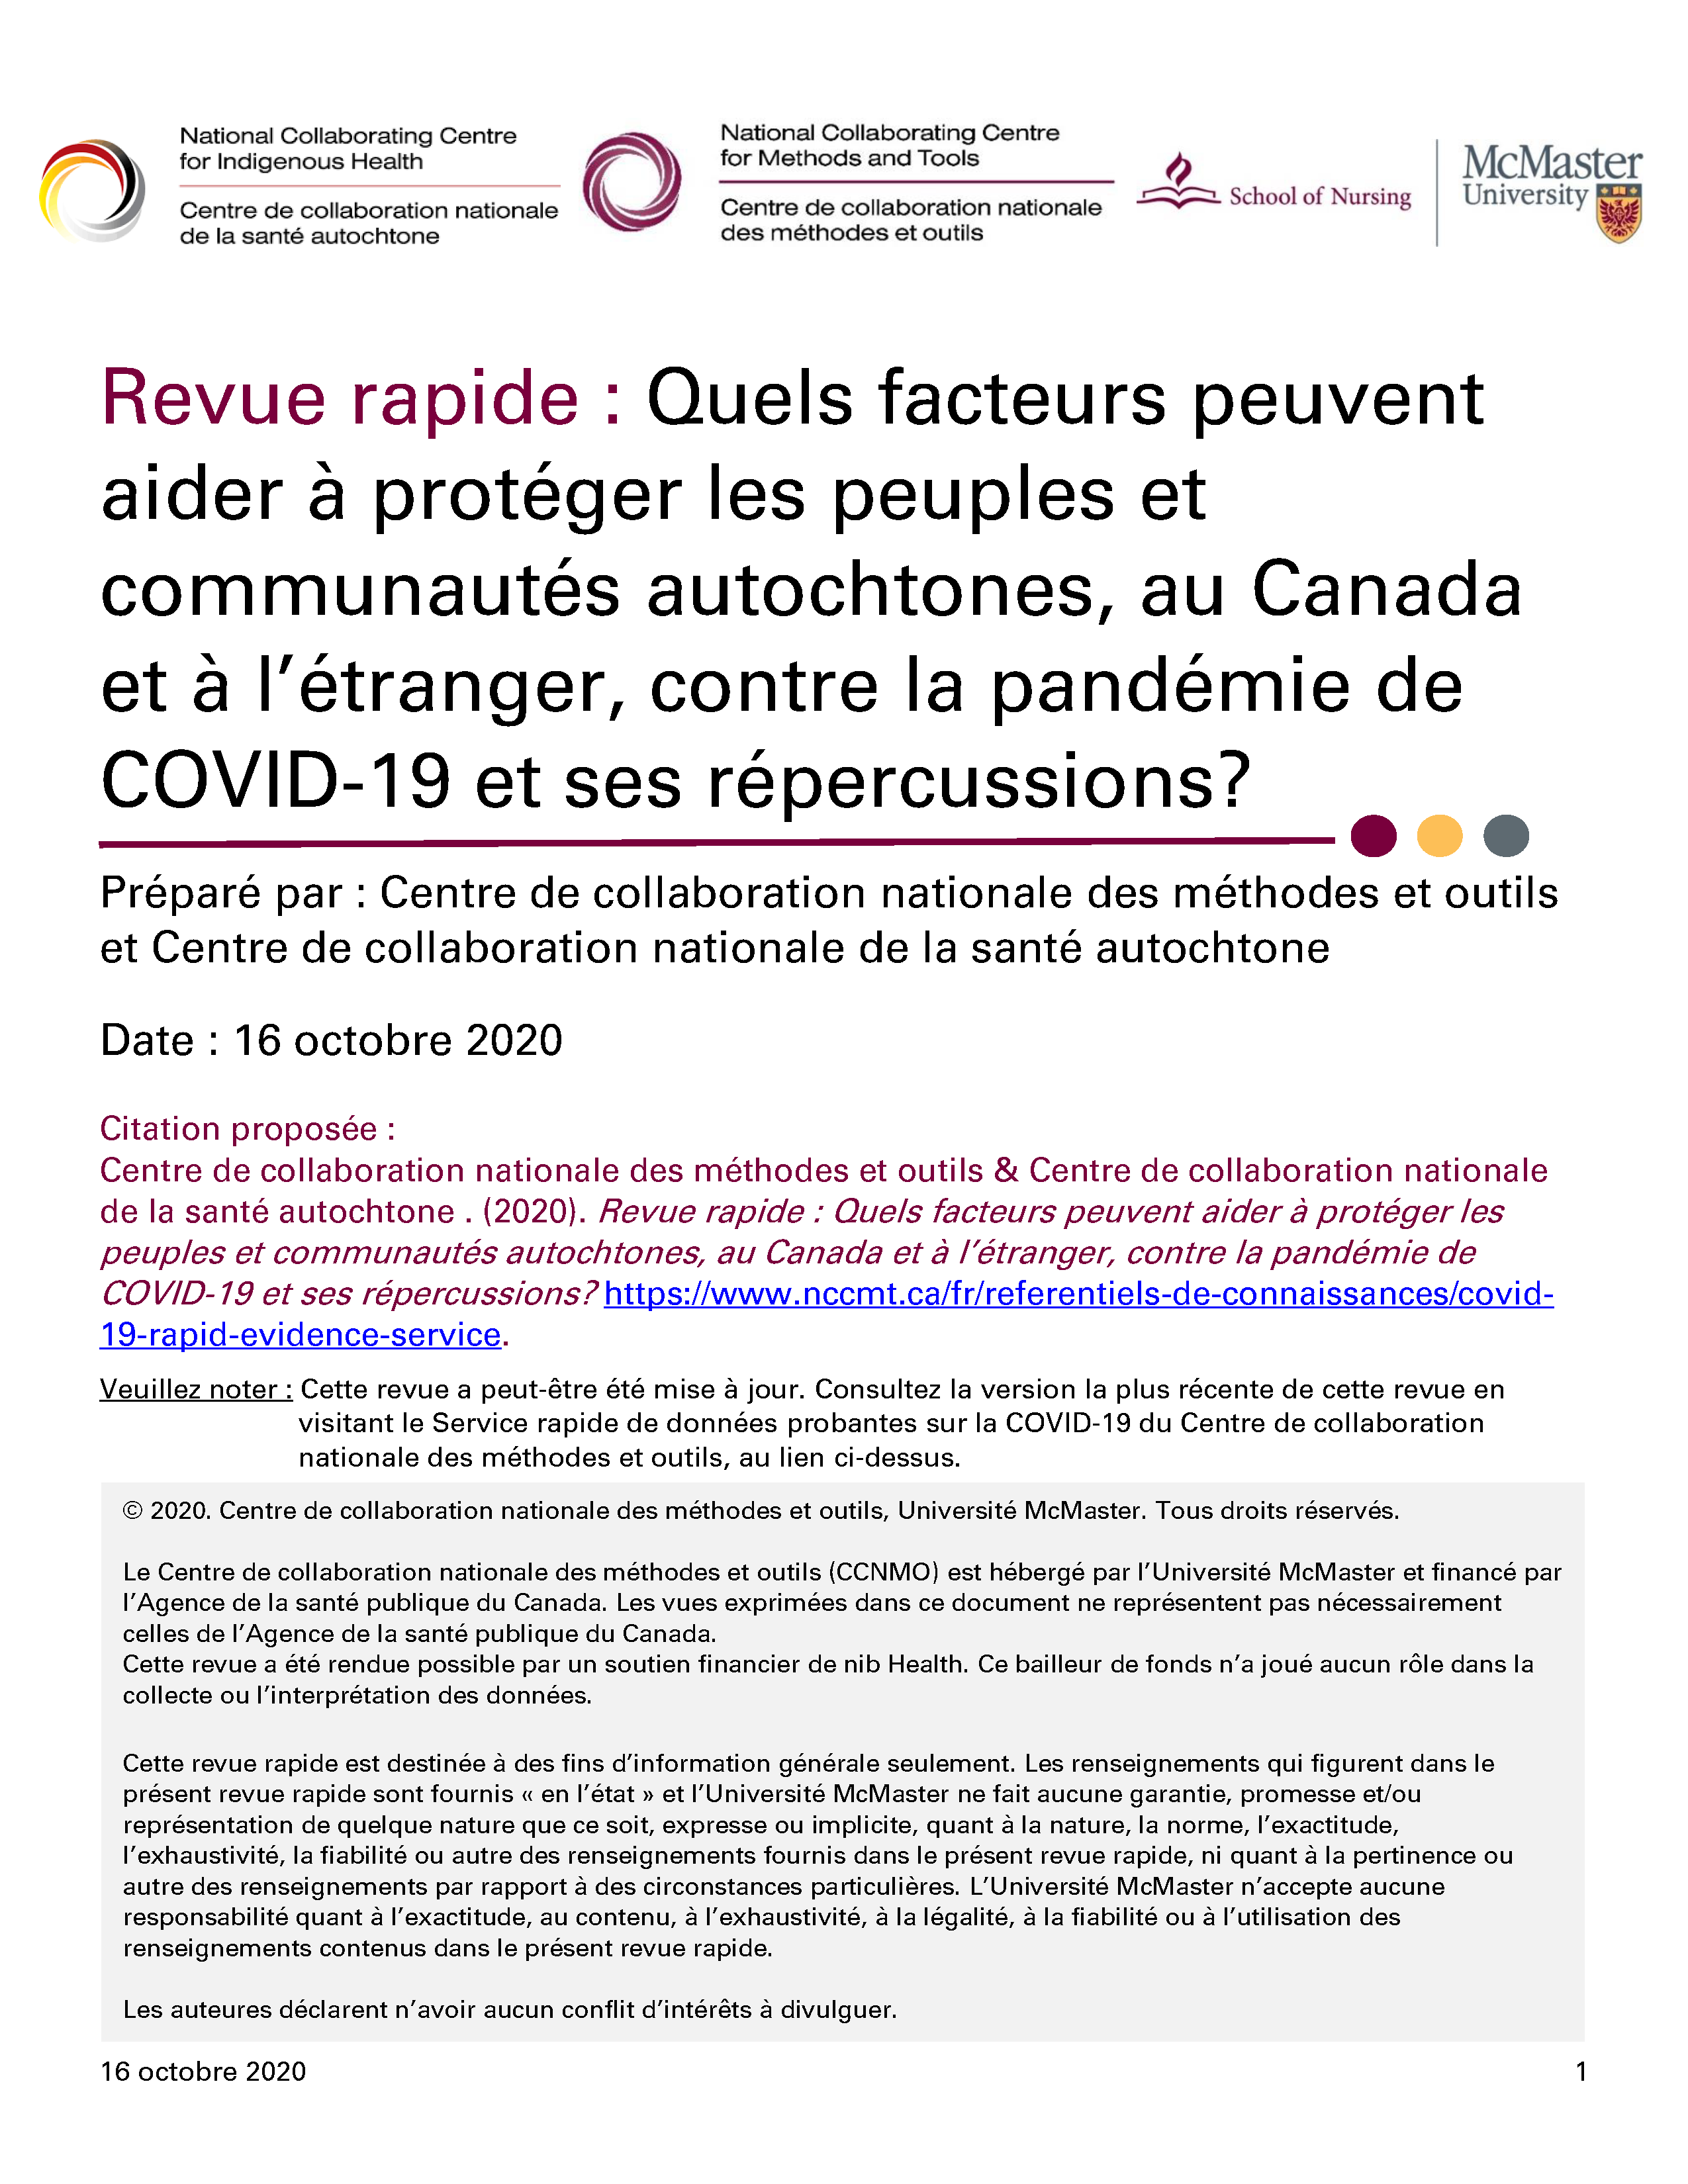 Quels facteurs peuvent aider à protéger les peuples et communautés autochtones, au Canada et à l’étranger, contre la pandémie de COVID-19 et ses répercussions?